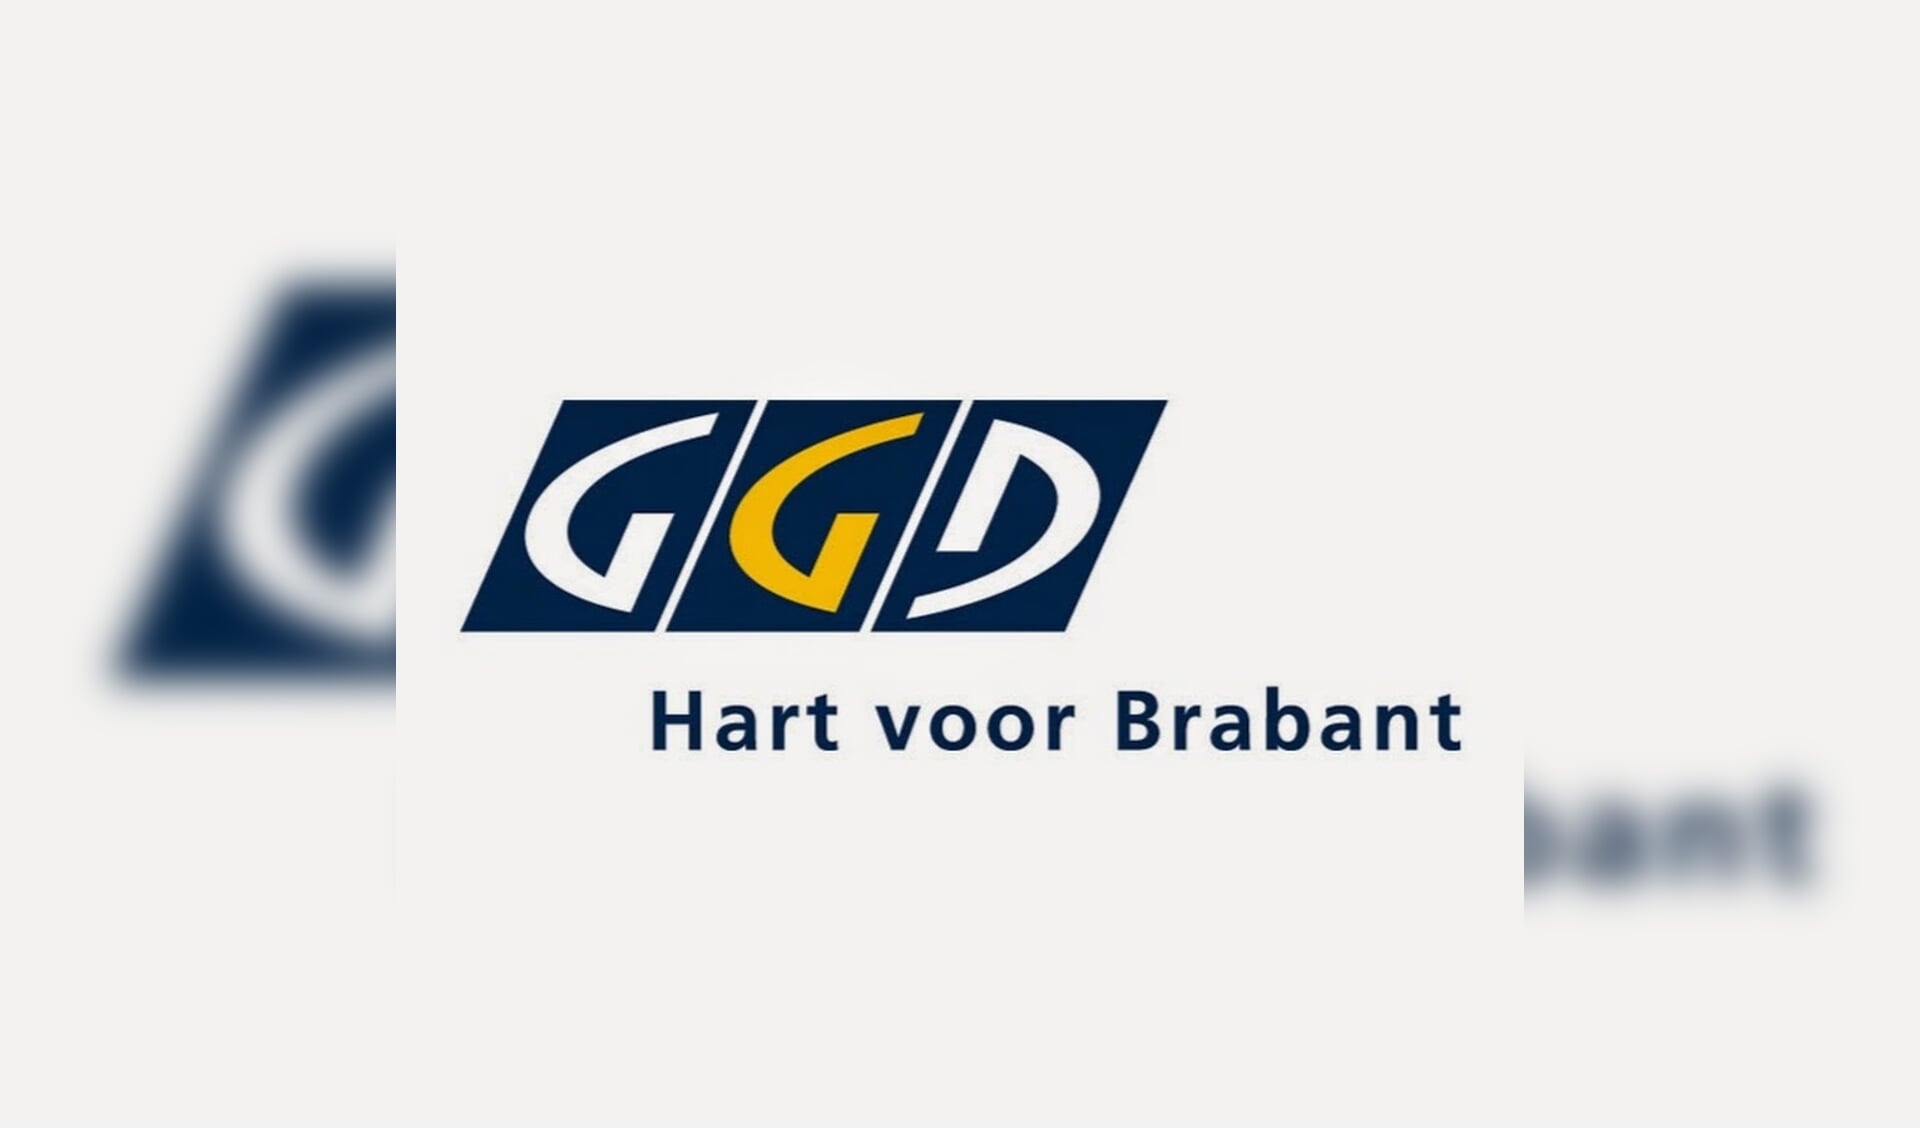 Bericht van GGD Hart voor Brabant.